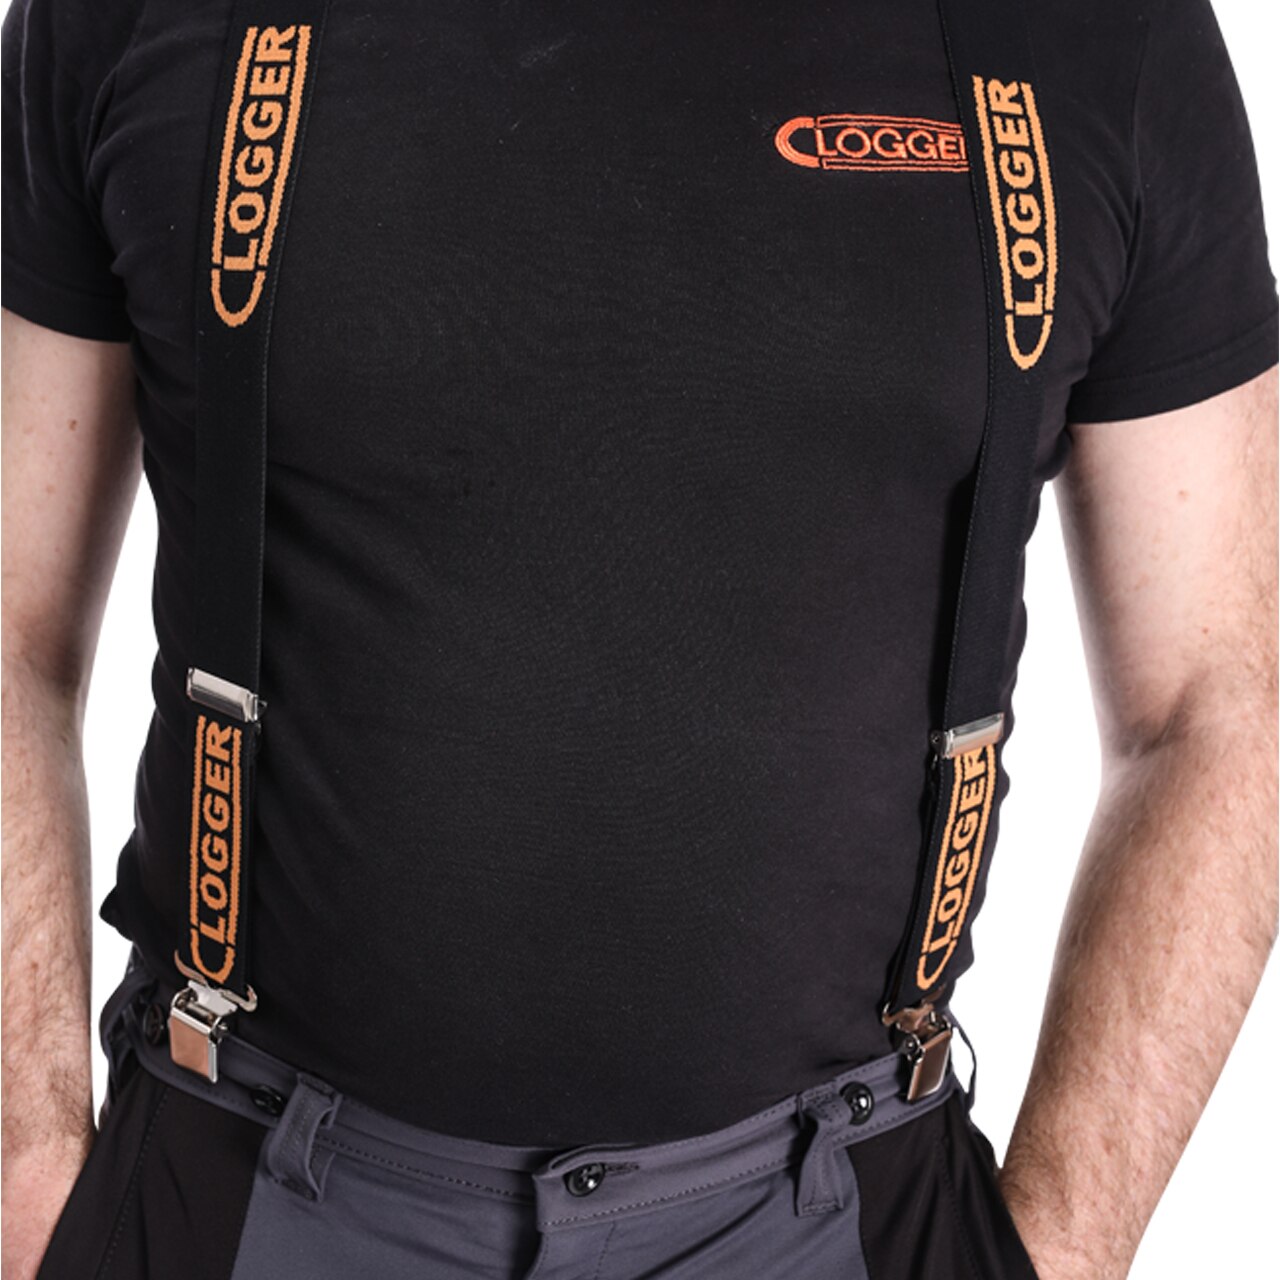 Clogger Premium Suspenders